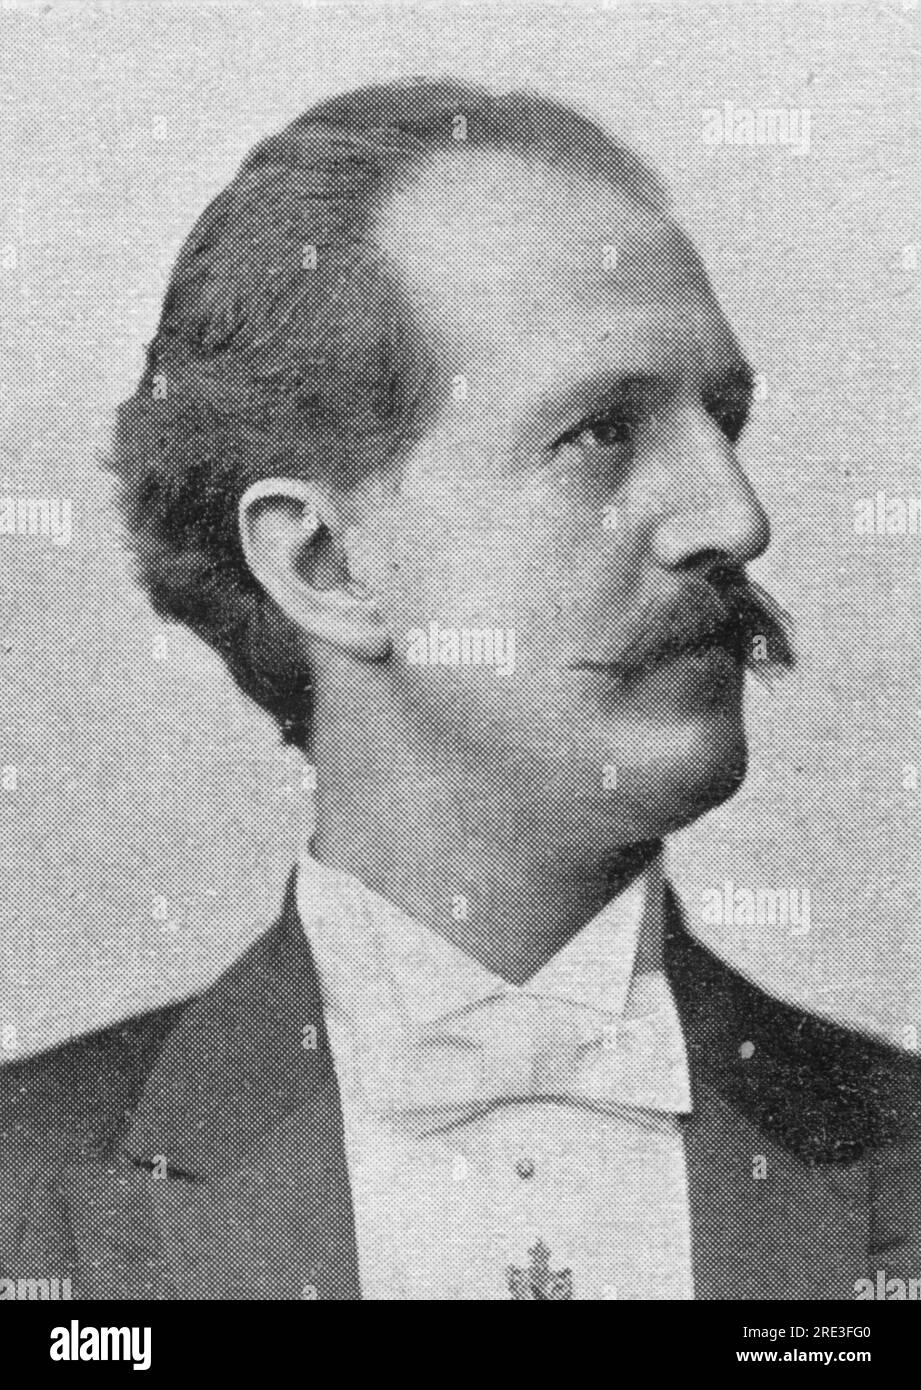 Winderstein, Hans, 29.10.1856 - 23,6.1925, deutscher Dirigent und Komponist, ADDITIONAL-RIGHTS-CLEARANCE-INFO-NOT-AVAILABLE Stockfoto